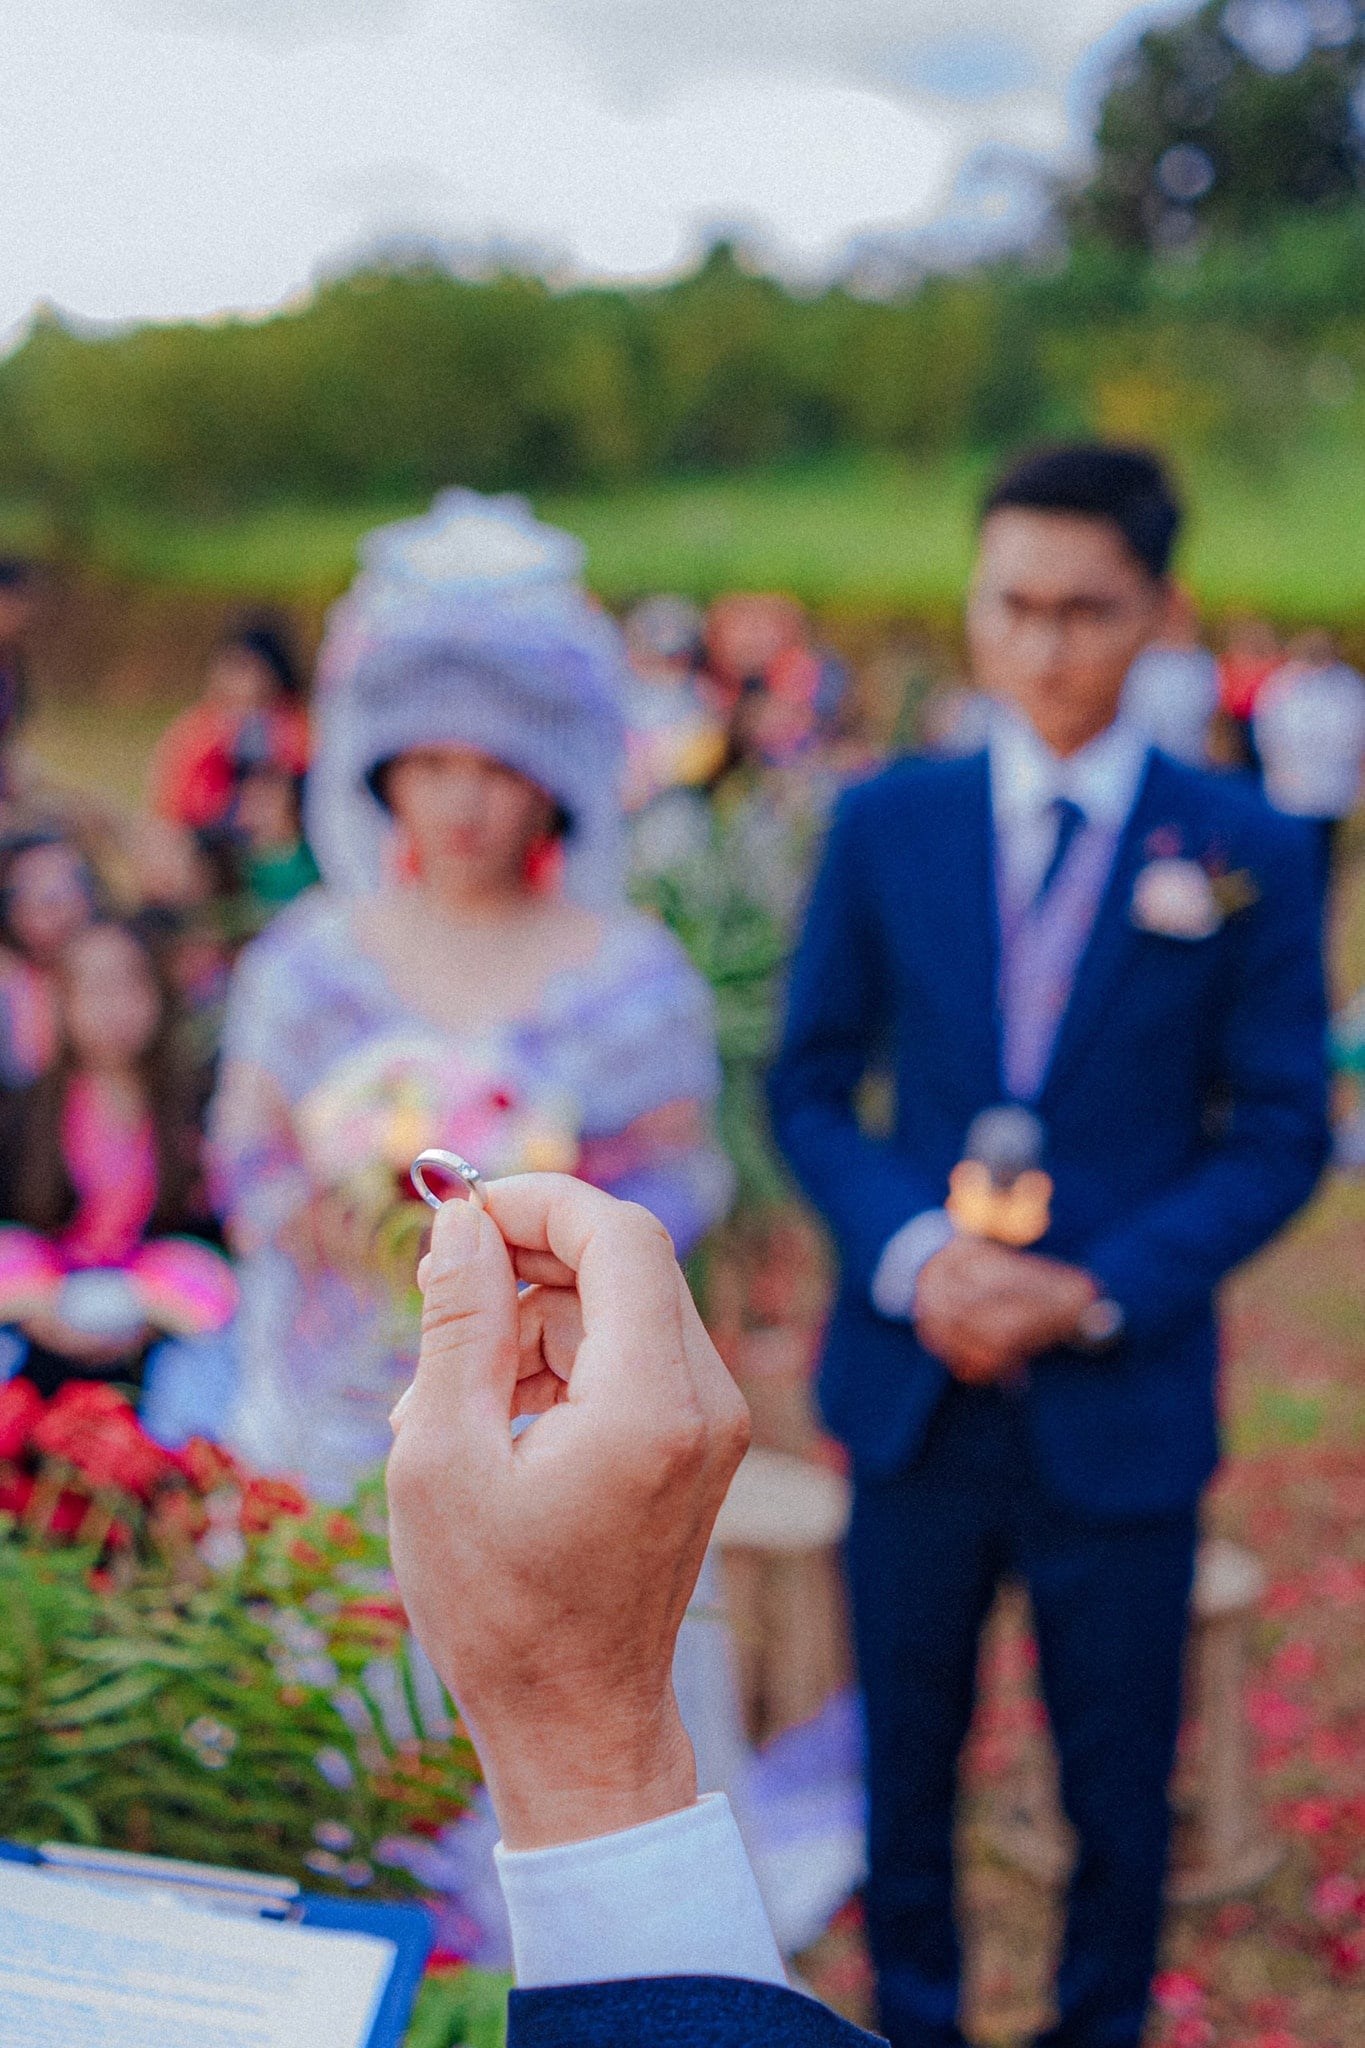 Đám cưới 'siêu lãng mạn' giữa mây trời Tây Bắc của cô dâu H'Mông và chú rể Sài thành